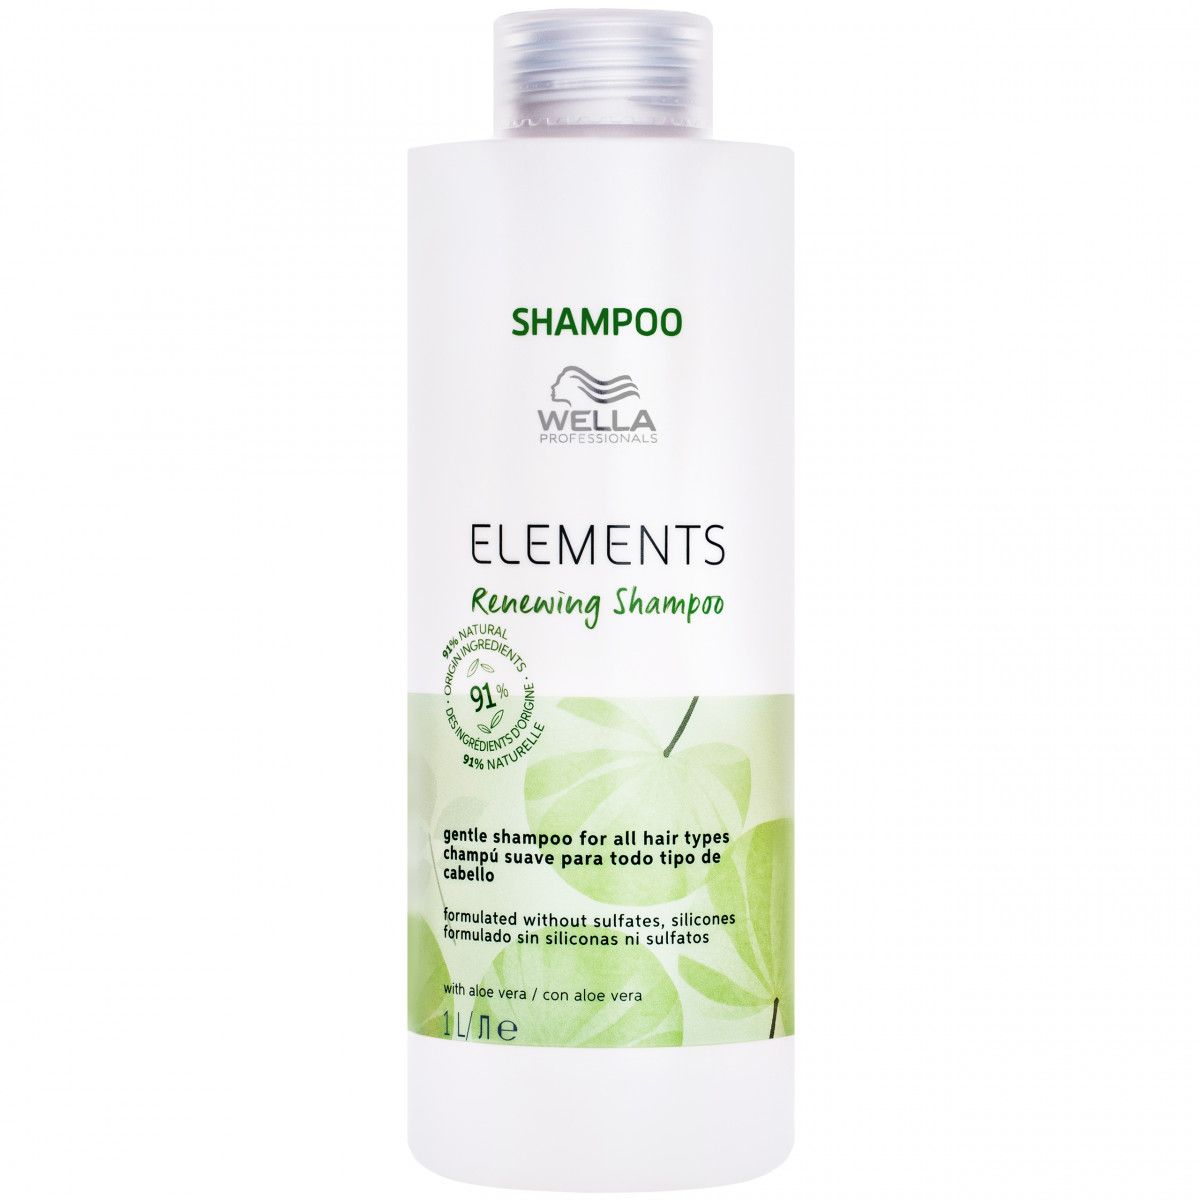 wella elements szampon skład